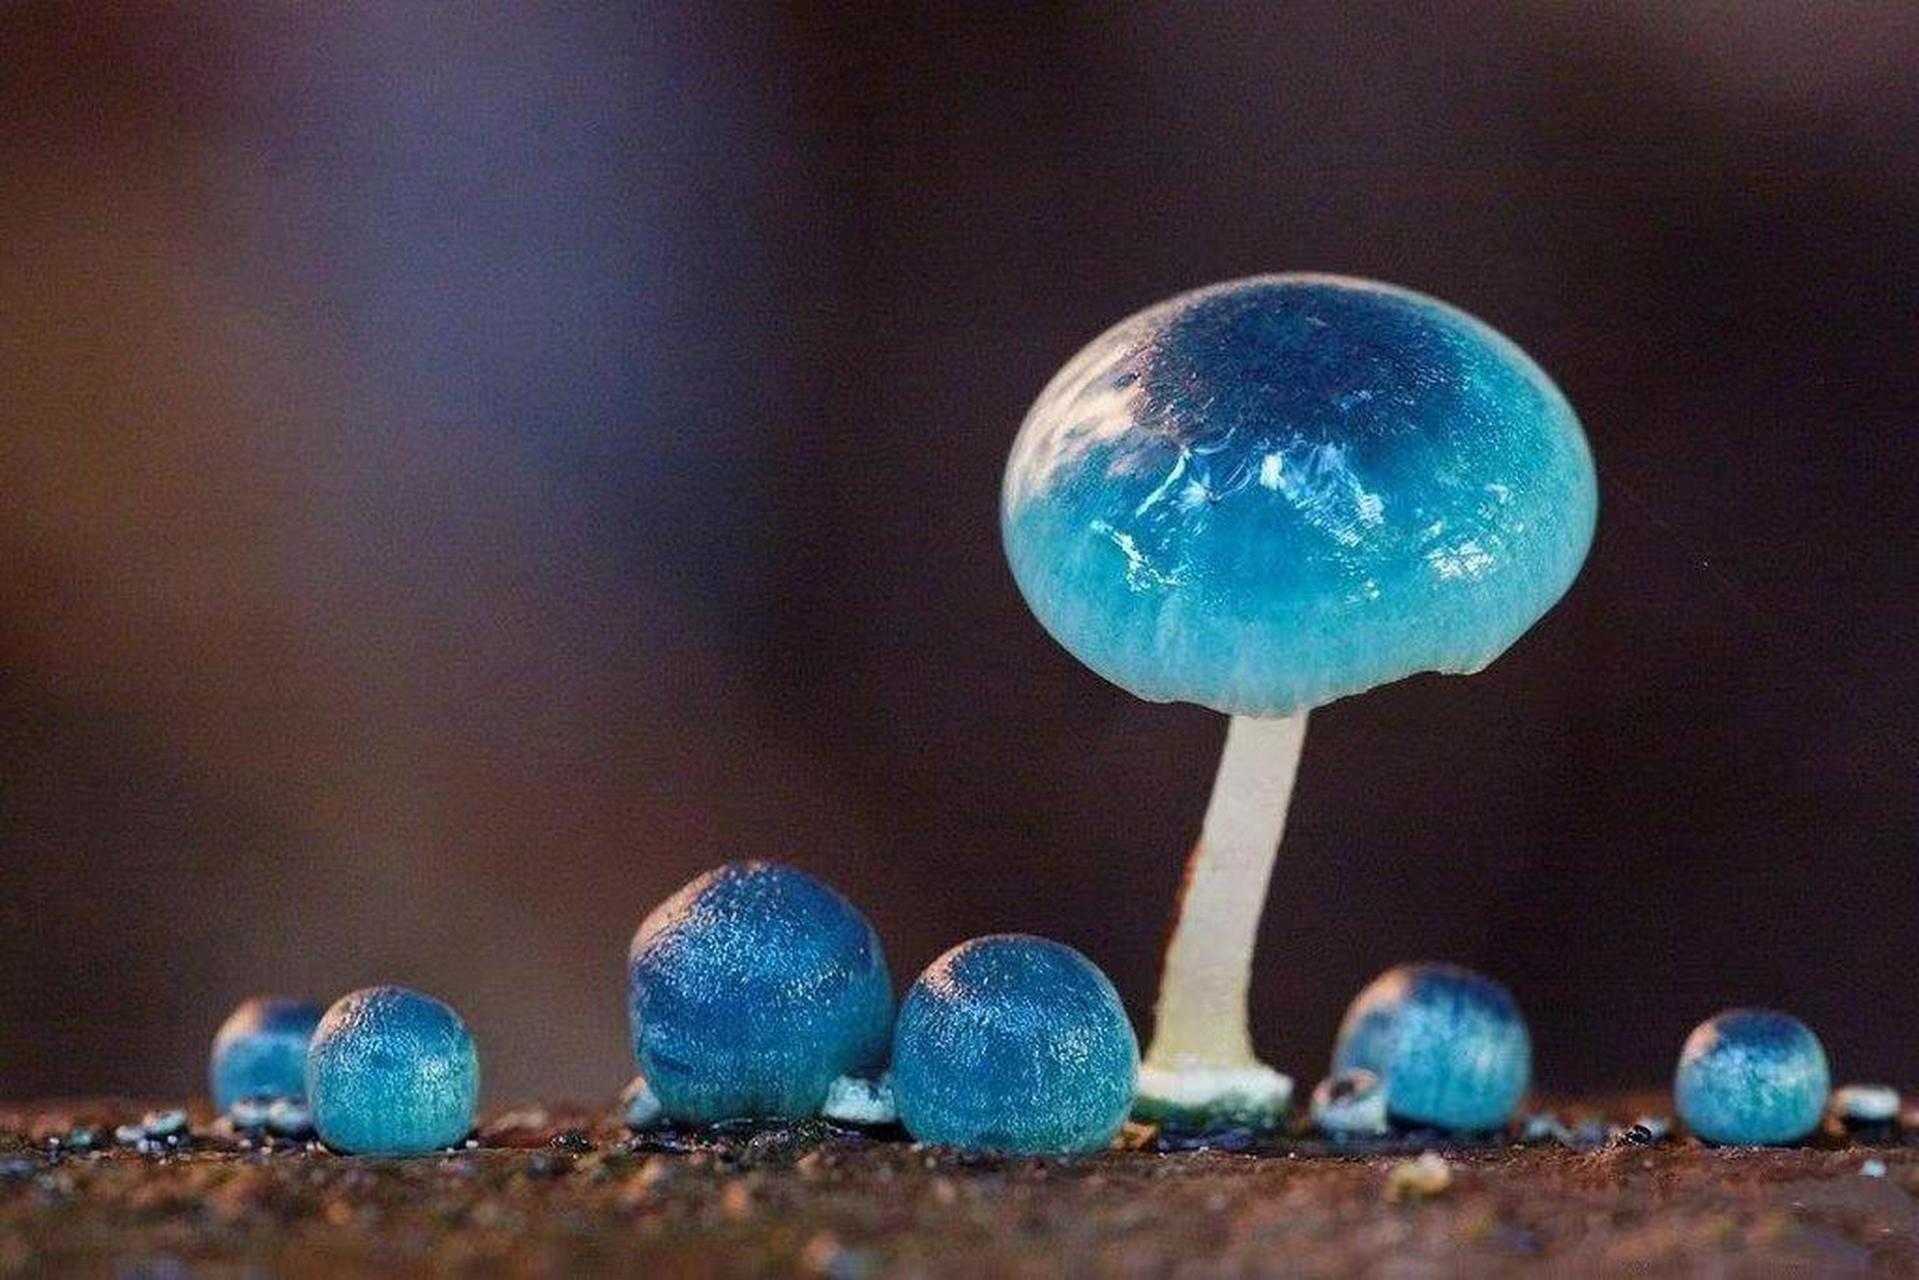 这是不是传说中的蓝瘦香菇?吃了会发生什么?